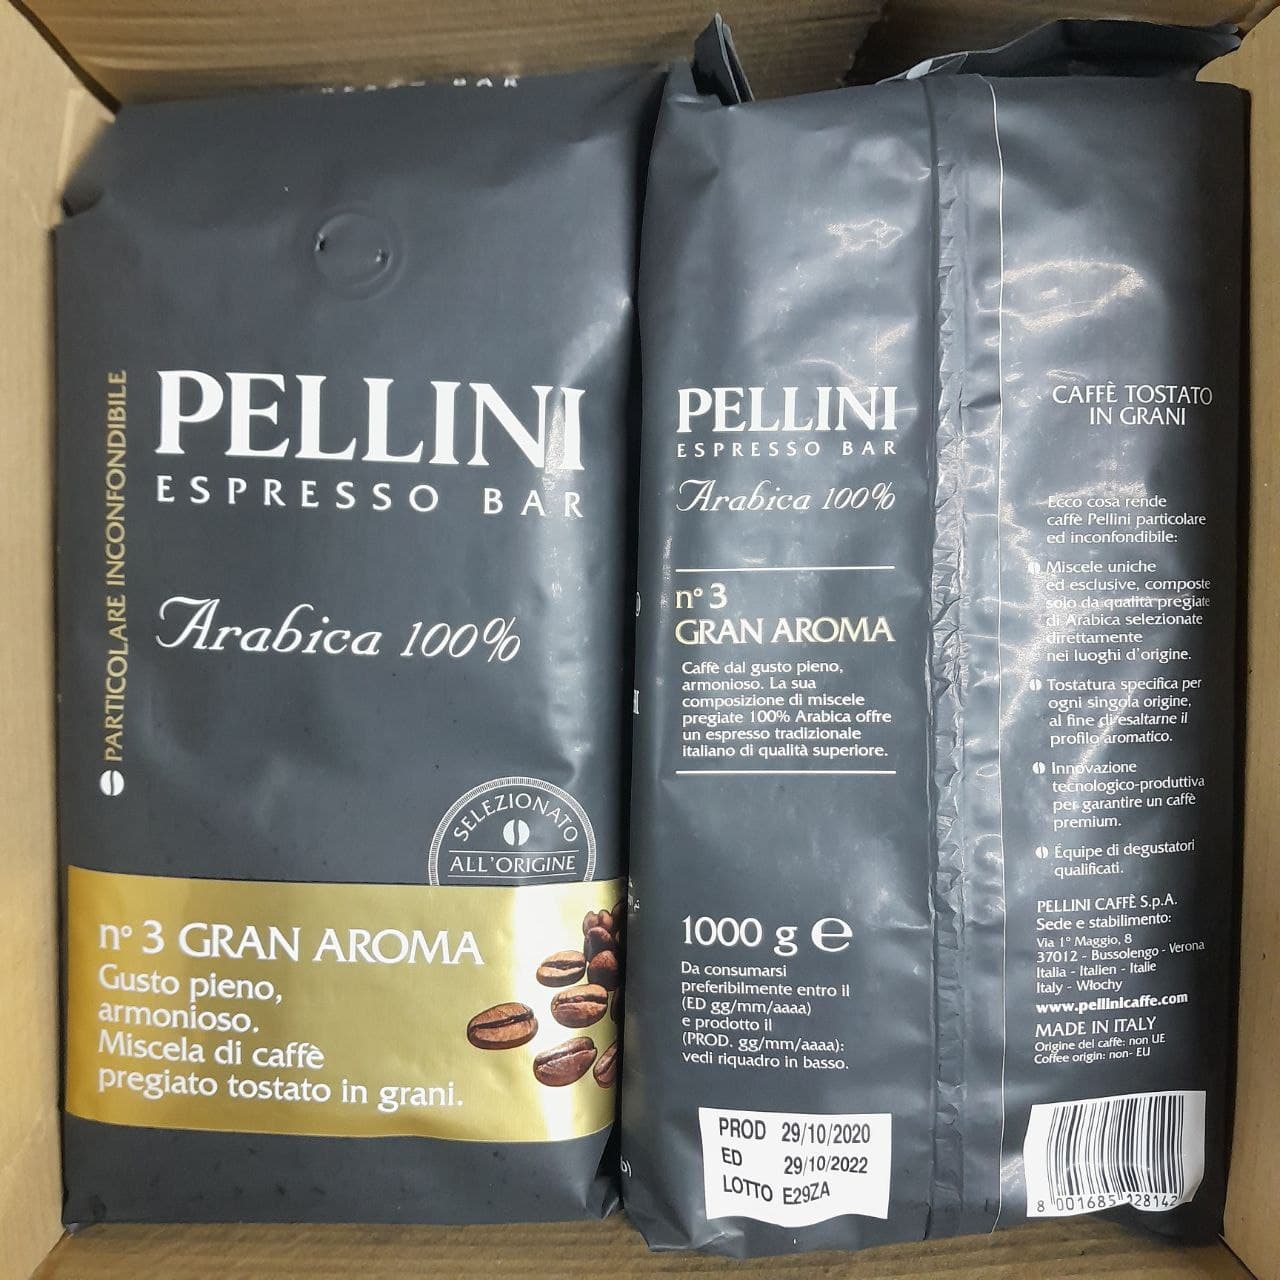 Pupiņu kafija "PELLINI" Gran Aroma